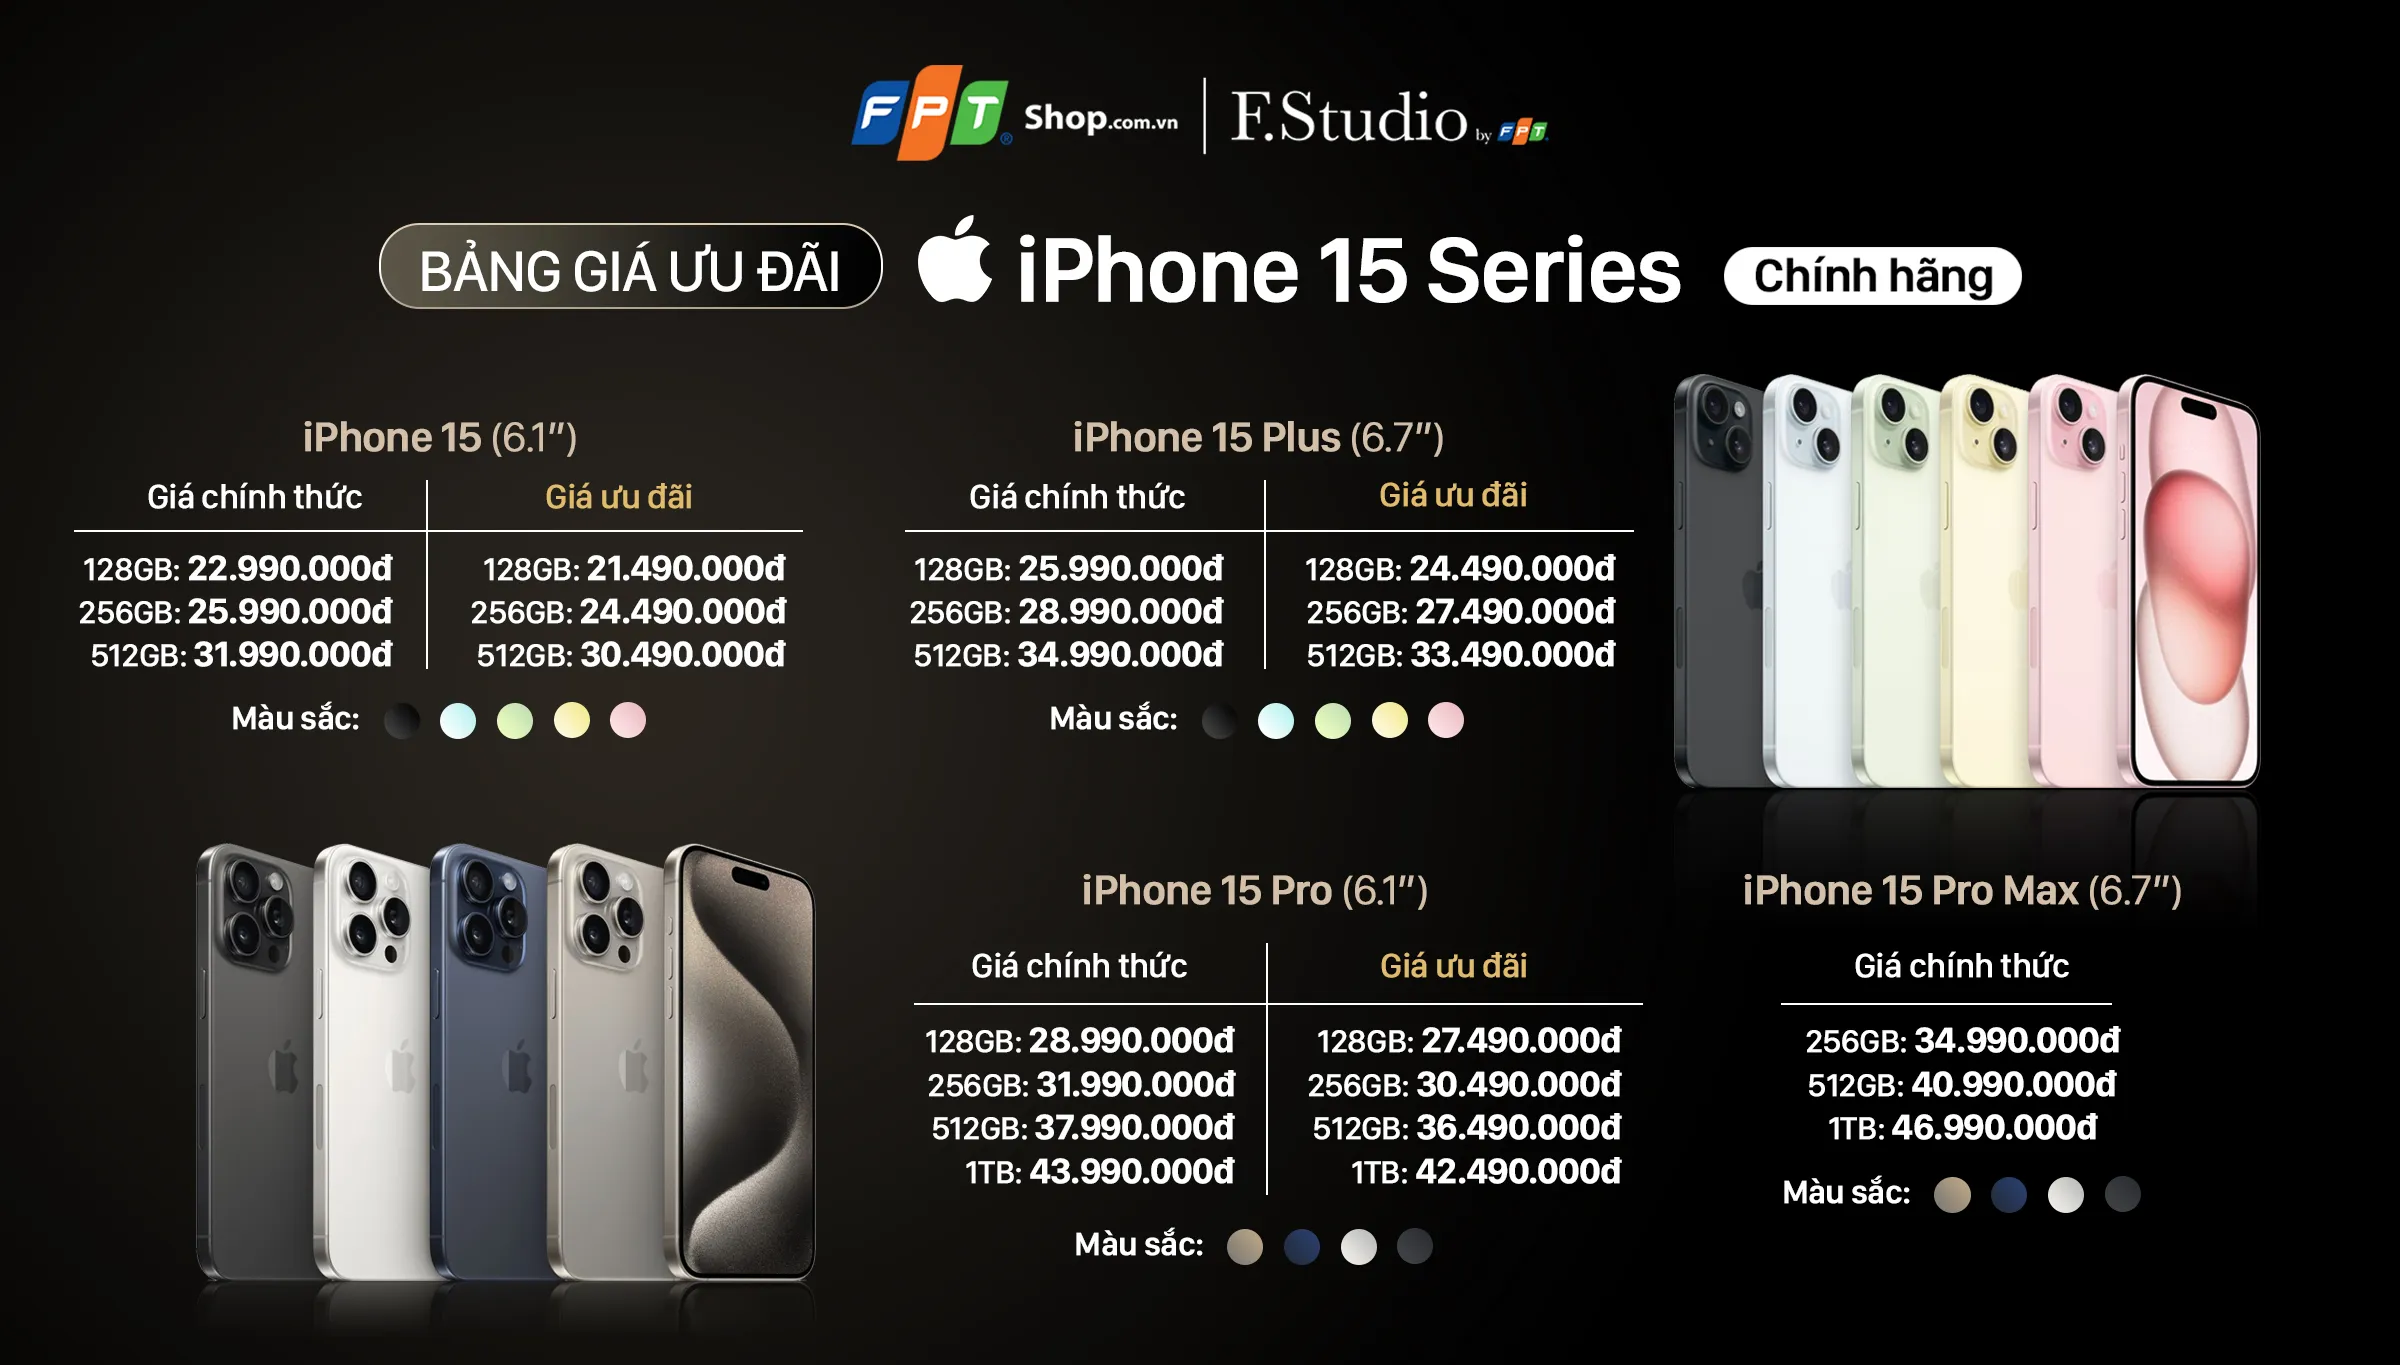 FPT Shop đạt 10,000 đơn đặt trước iPhone 15 Series ngay trong sáng đầu tiên mở cọc